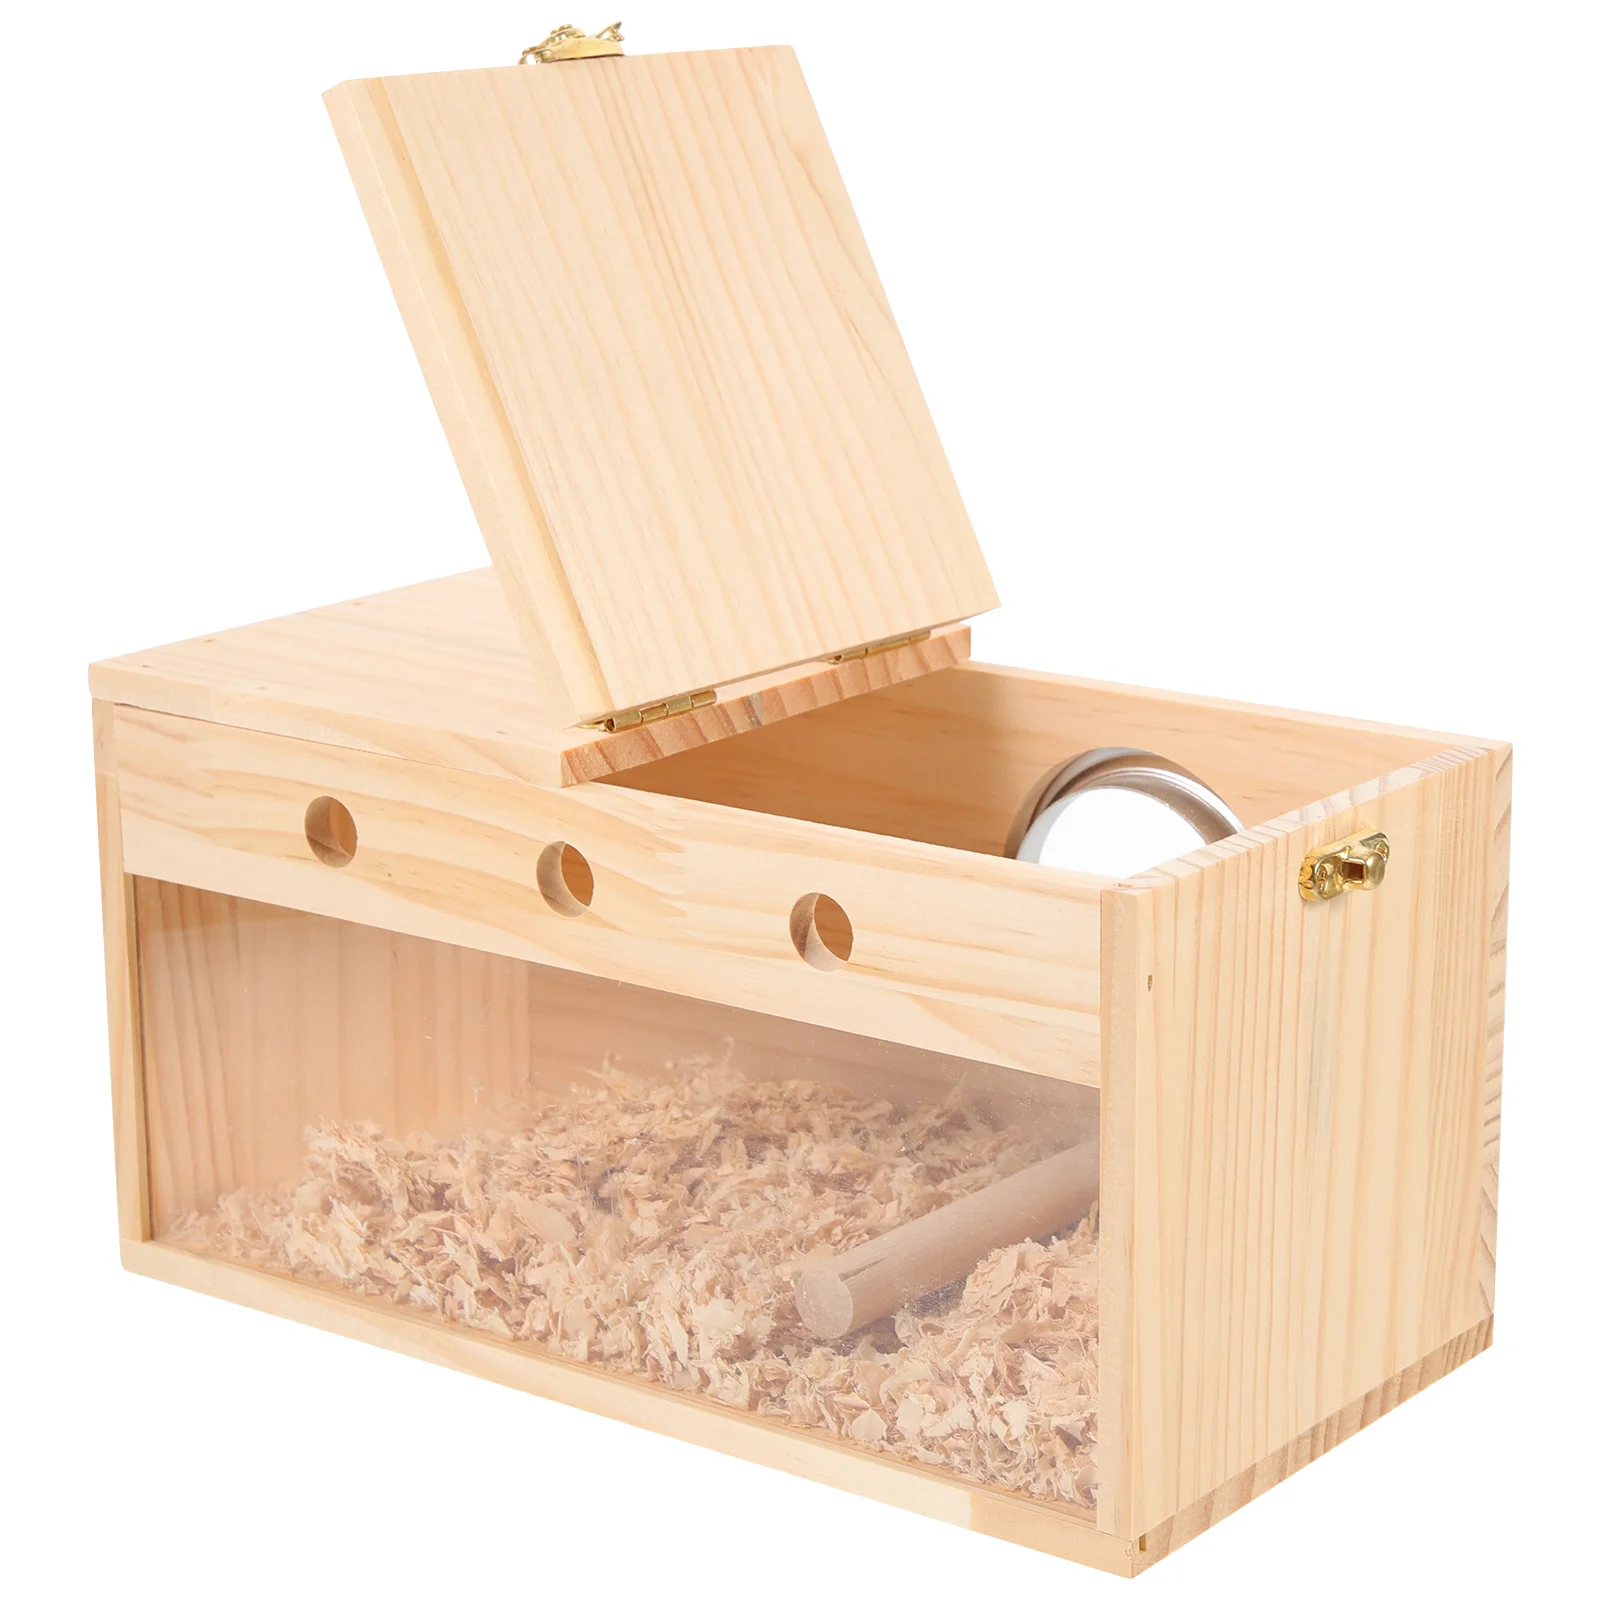 

Ящик для Разведения Попугаев, гнездо для птиц, аксессуары, ящики, деревянный домик для птиц